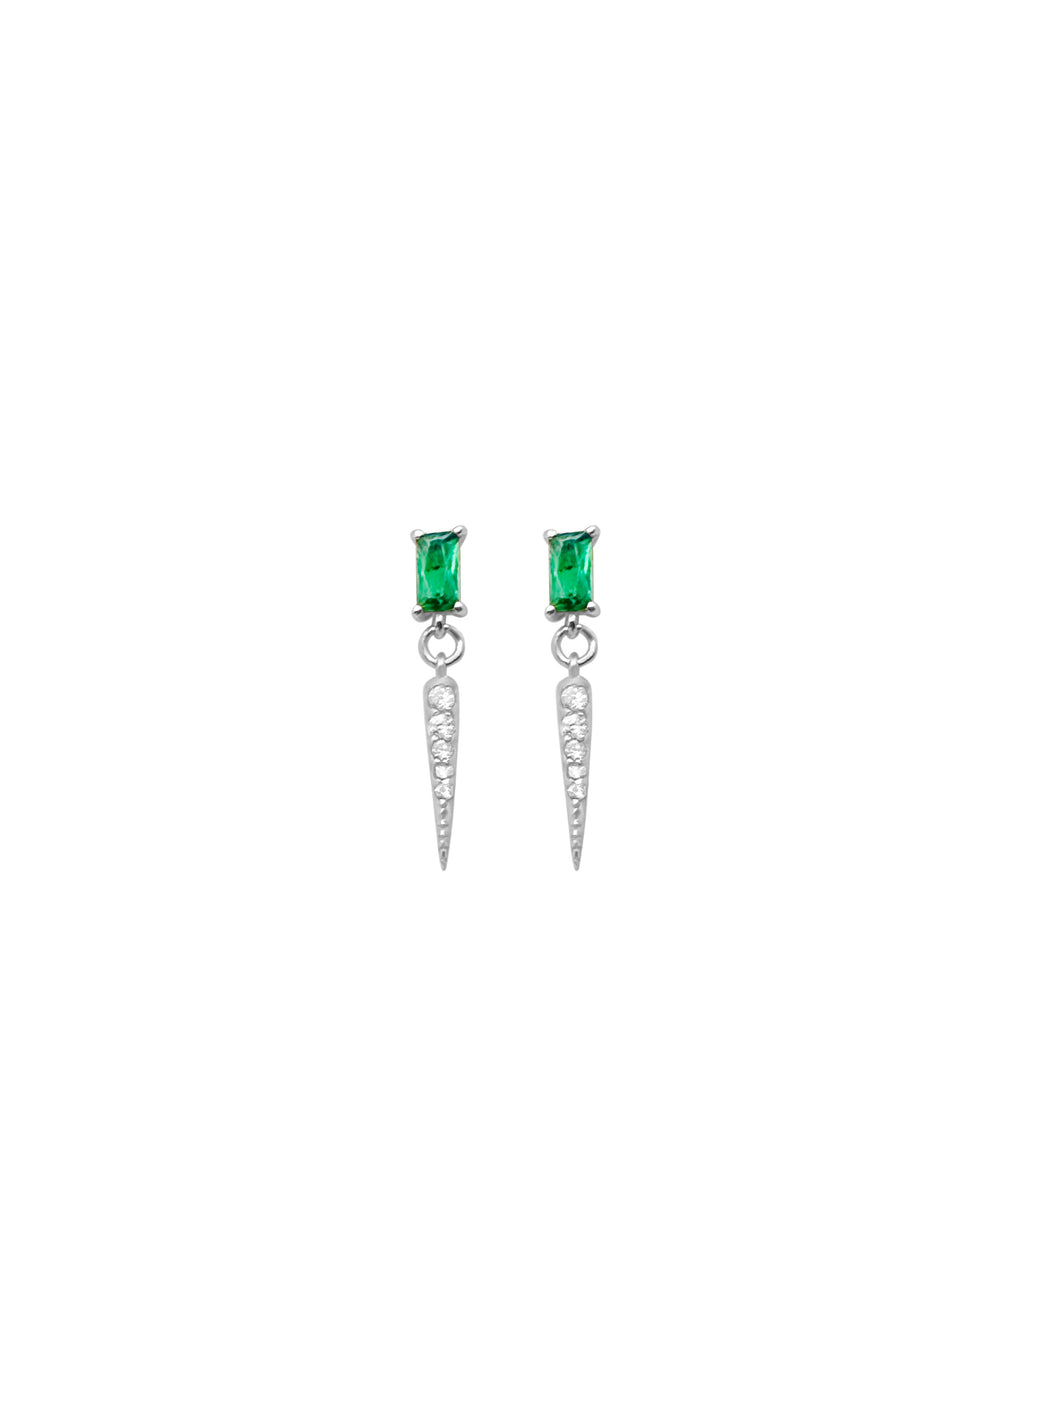 14k Emerald & Diamond Earrings